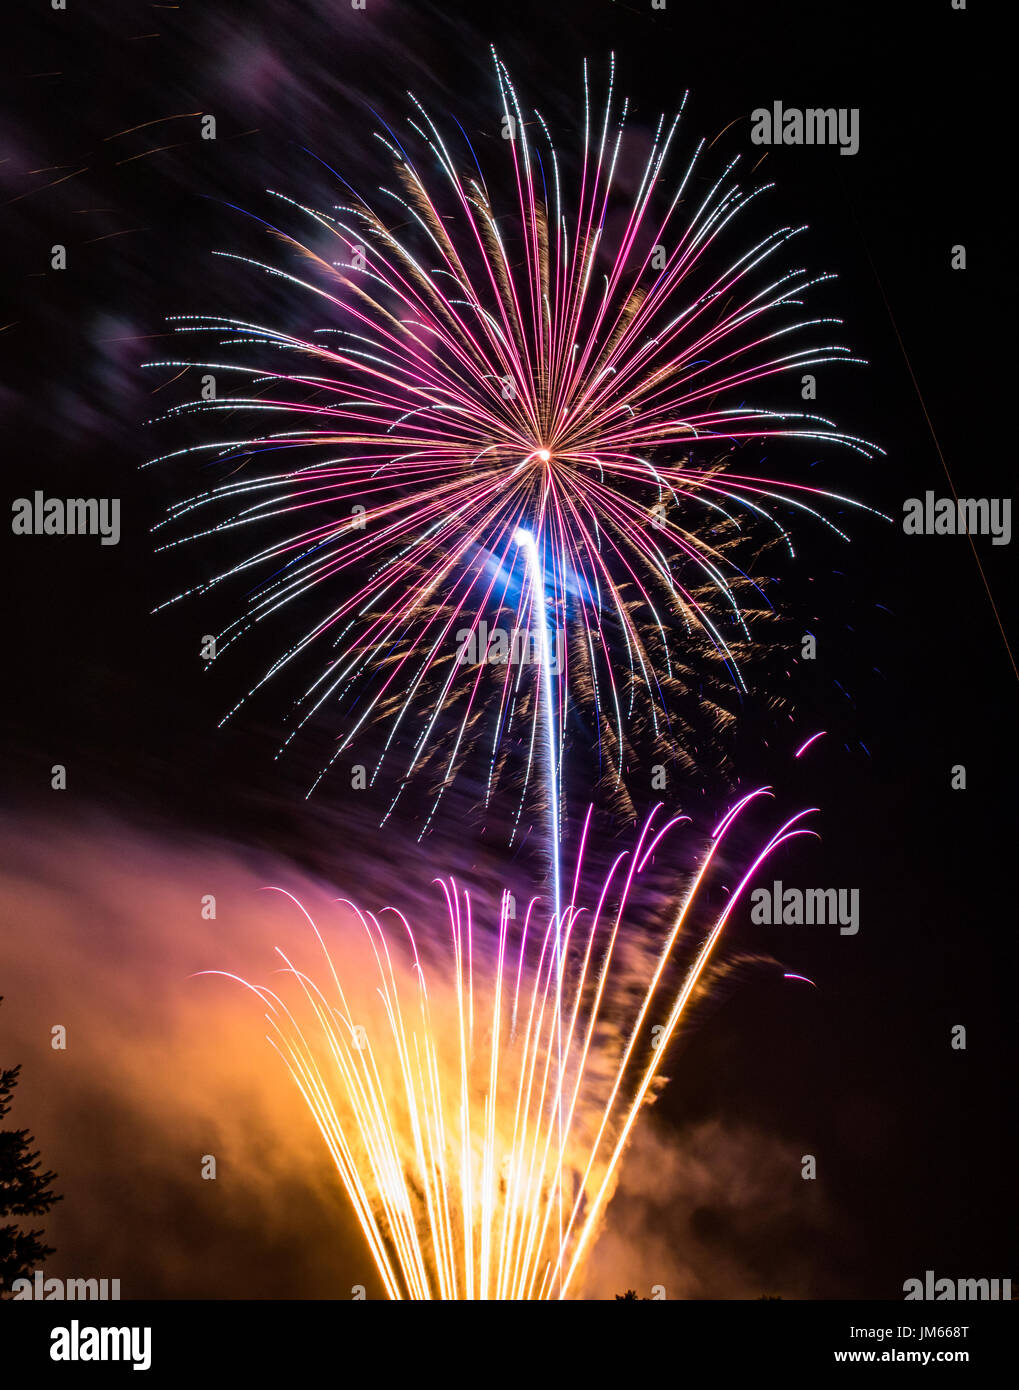 Foto vertical de color amarillo, naranja y violeta fuegos artificiales de disparo desde el suelo mientras un fuegos artificiales multicolores explota en el cielo de la noche Foto de stock